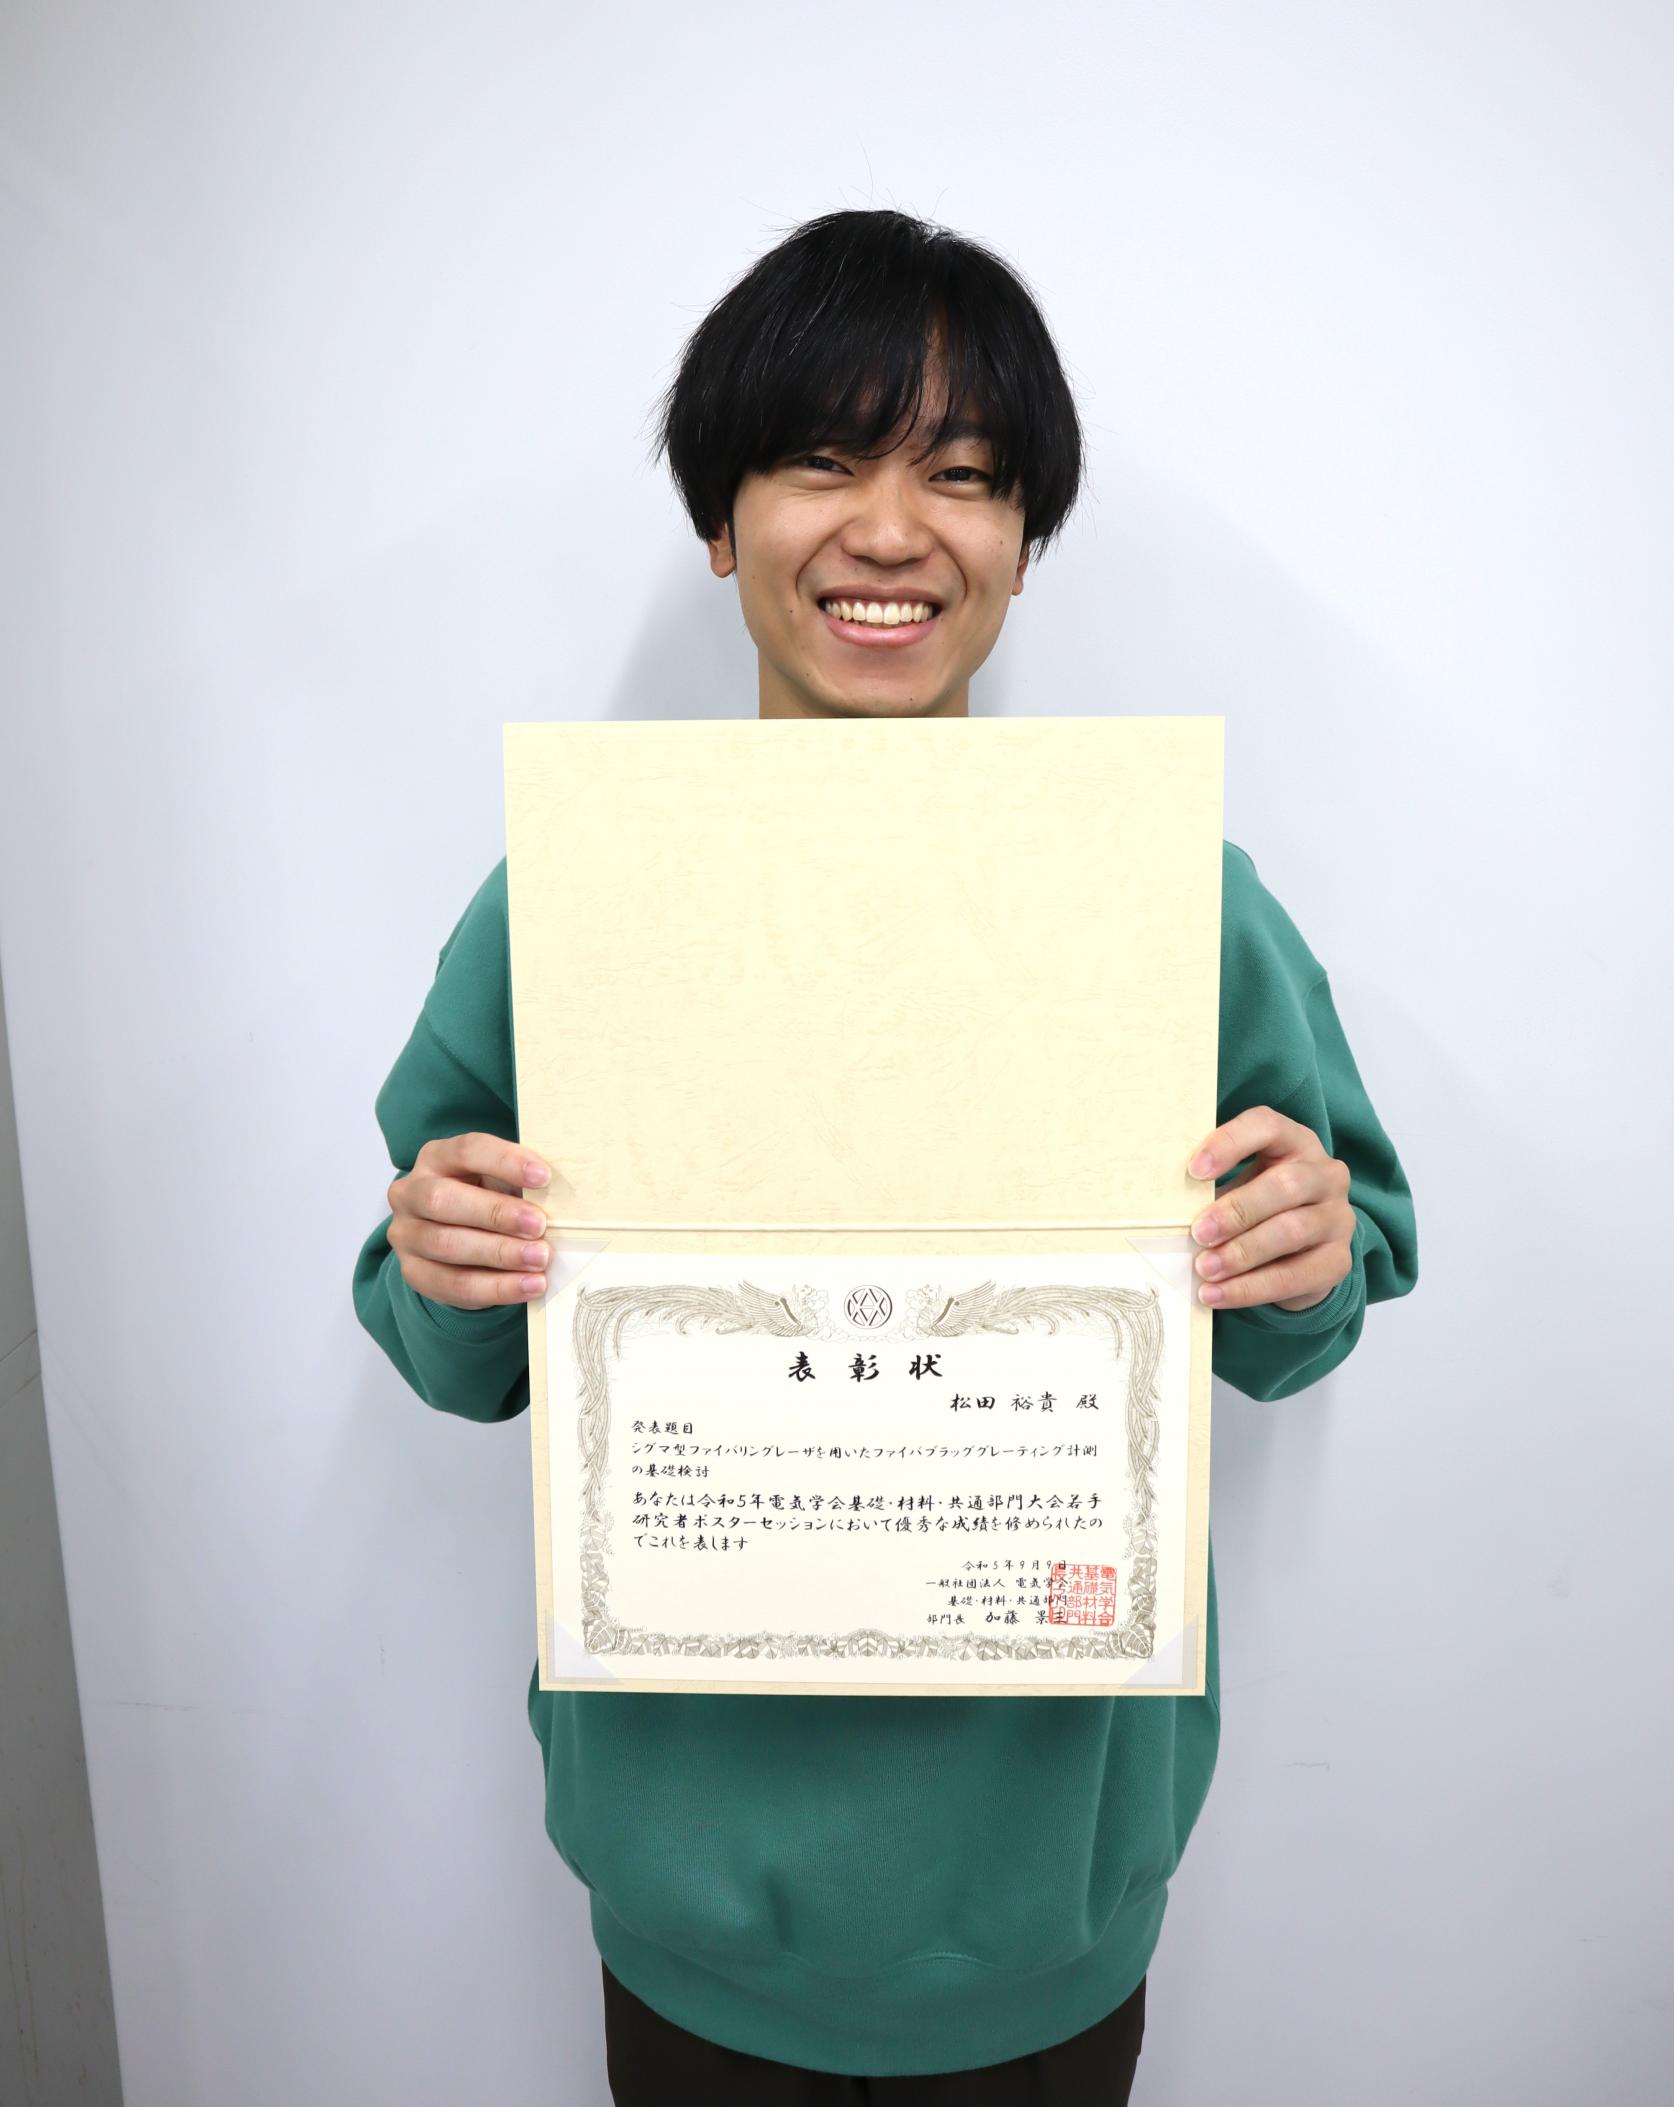 電気工学専攻博士前期課程2年松田裕貴さんが、電気学会A部門大会において、「若手優秀ポスター賞」を受賞しました。